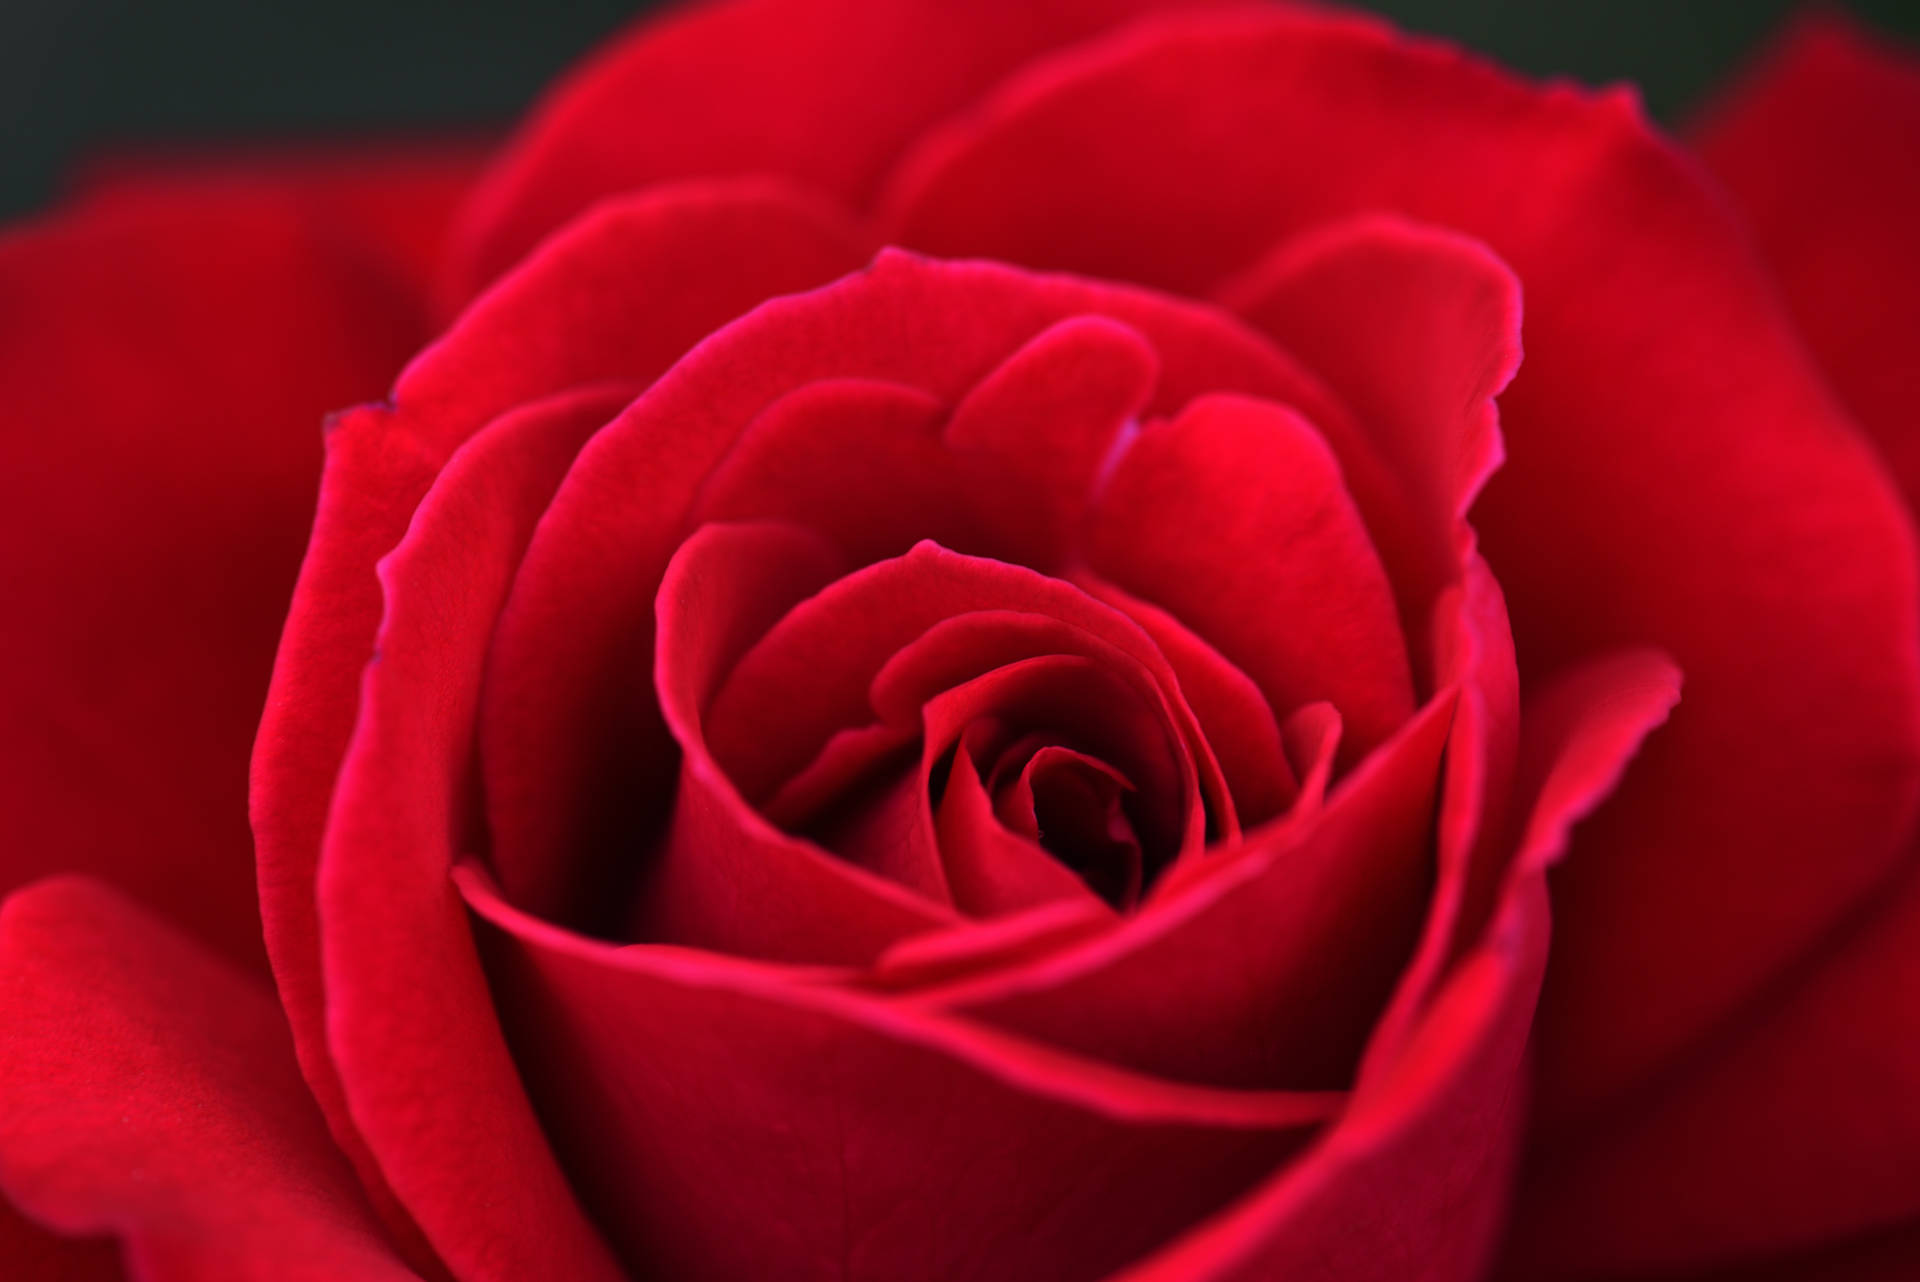 Fotode Perto De Uma Rosa Vermelho-escuro Para Papel De Parede De Computador Ou Celular. Papel de Parede